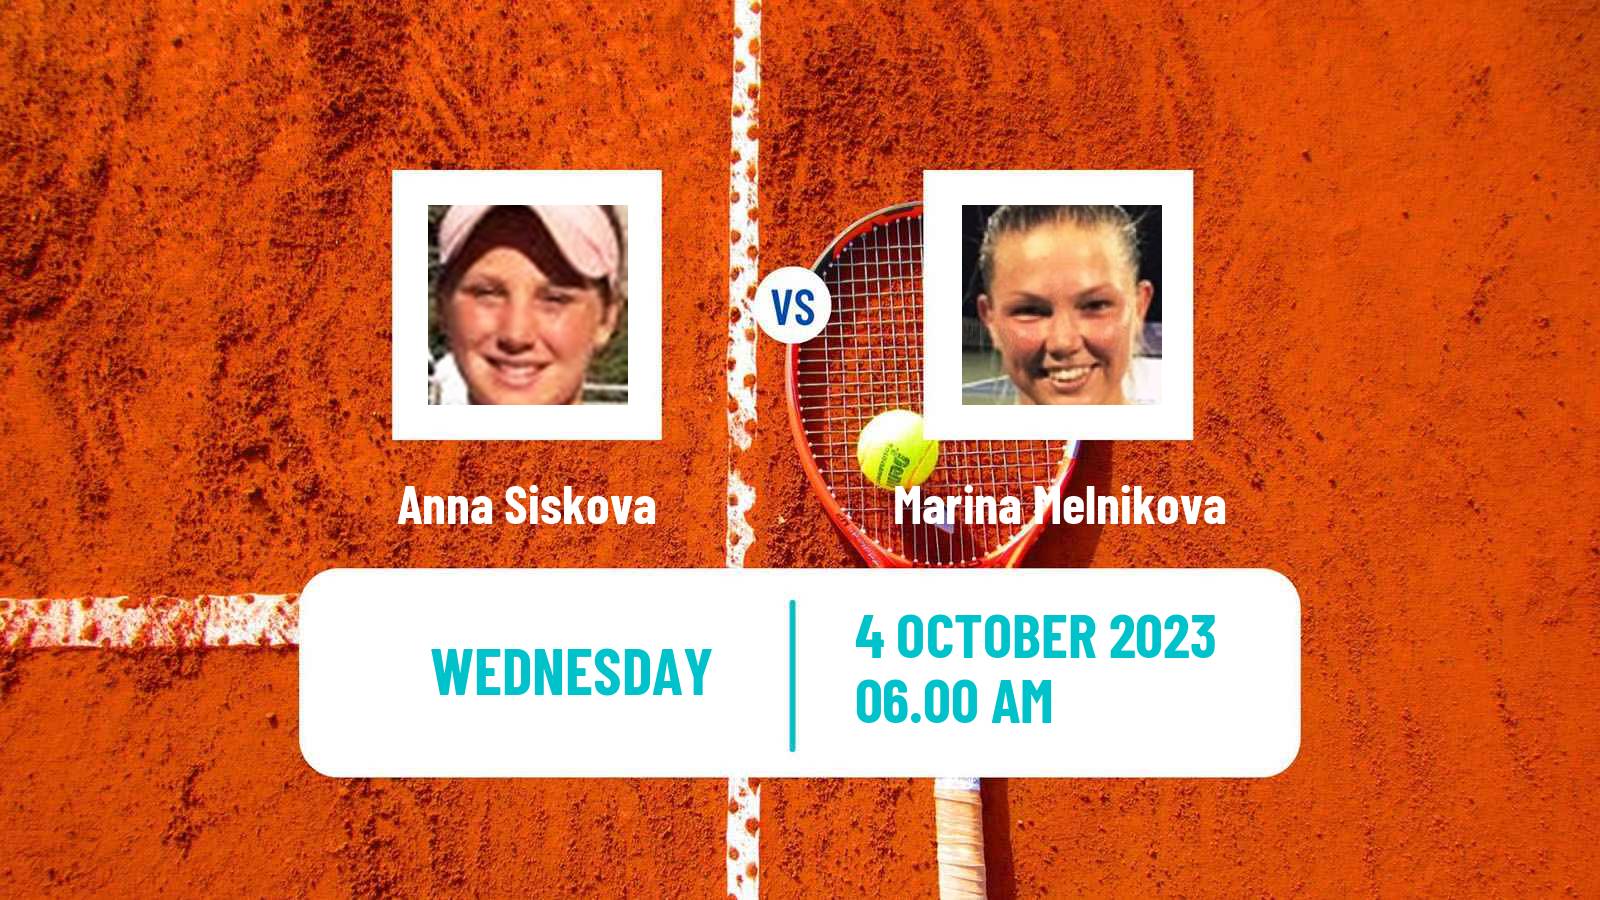 Tennis ITF W25 Reims Women Anna Siskova - Marina Melnikova